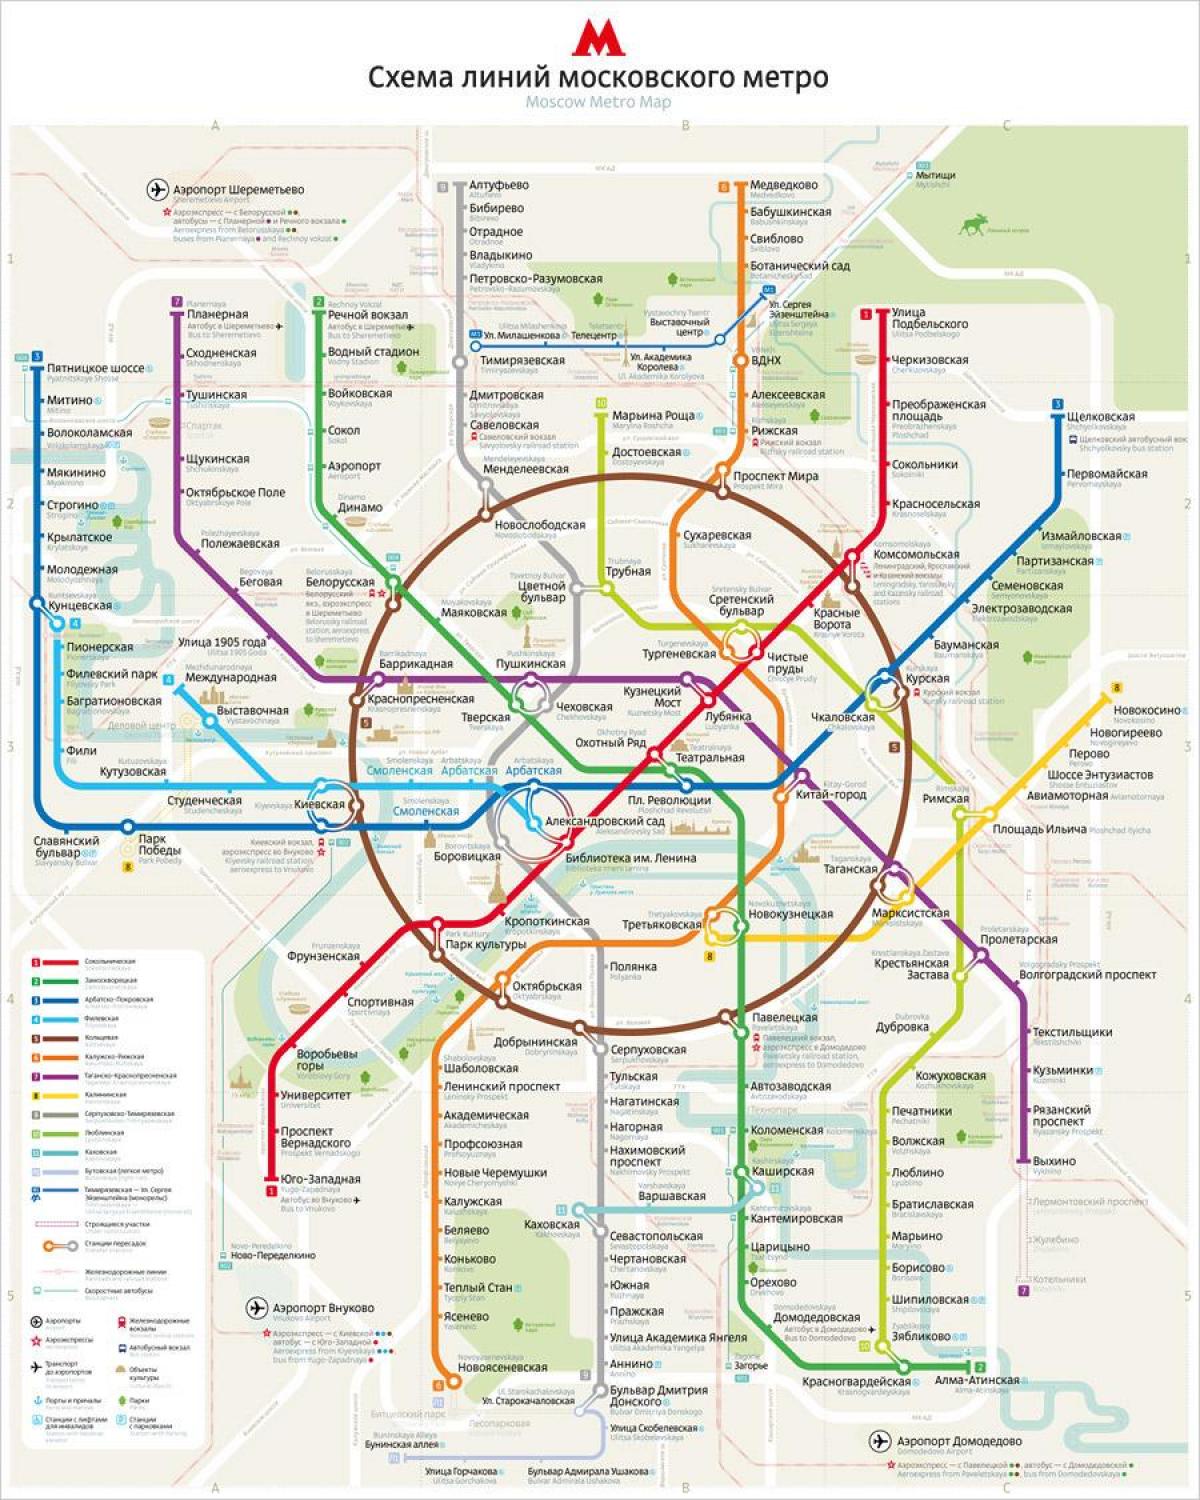 zemljevid Moskovski metro, angleščini in ruščini